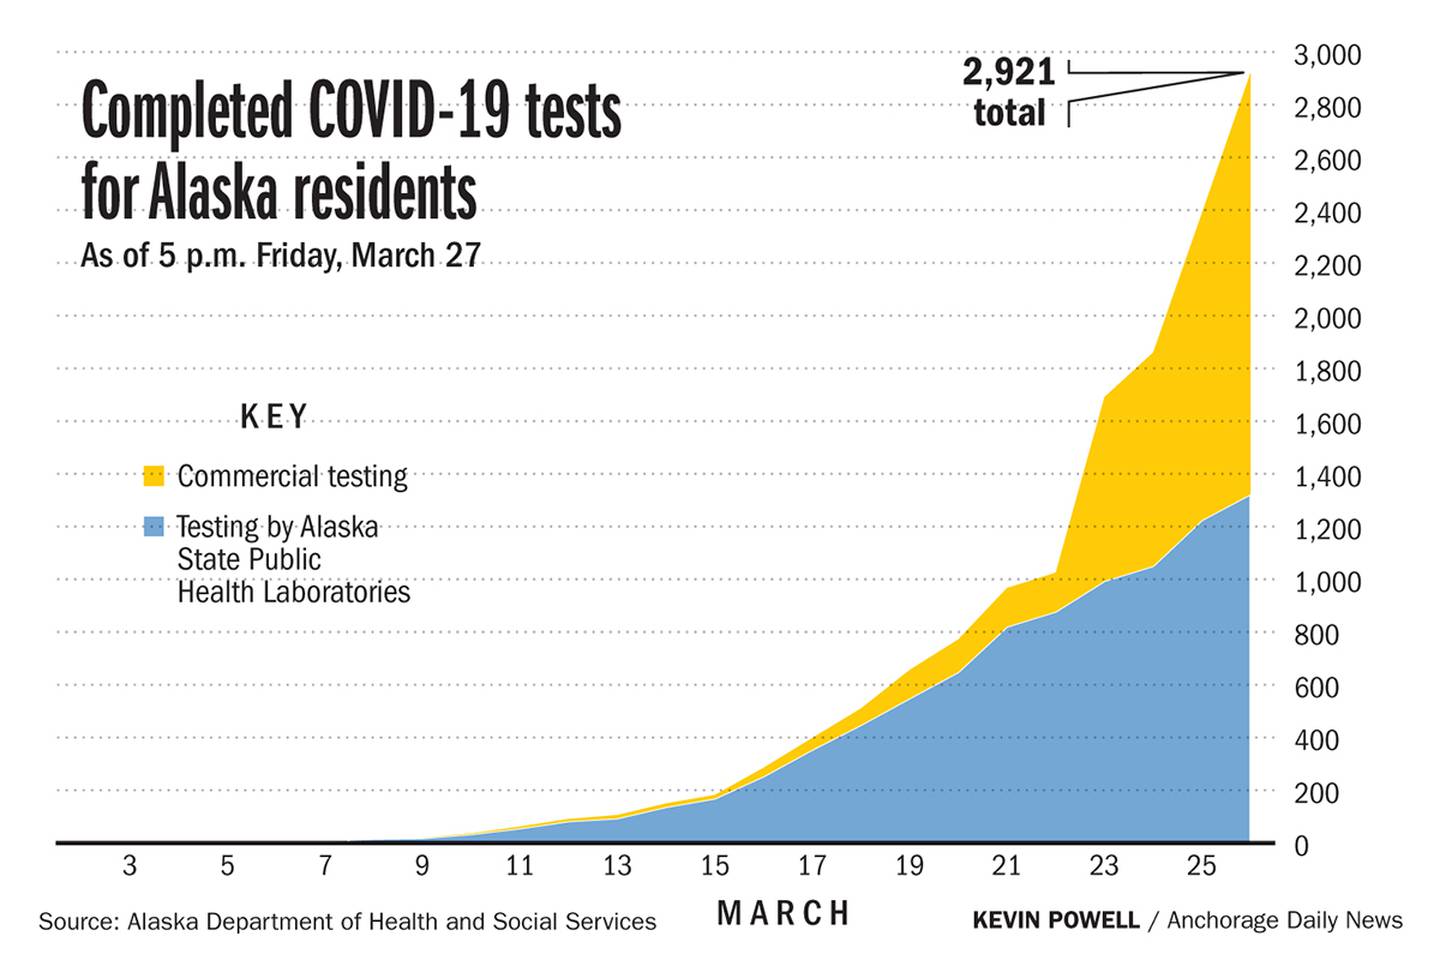 COVID-19 testing in Alaska